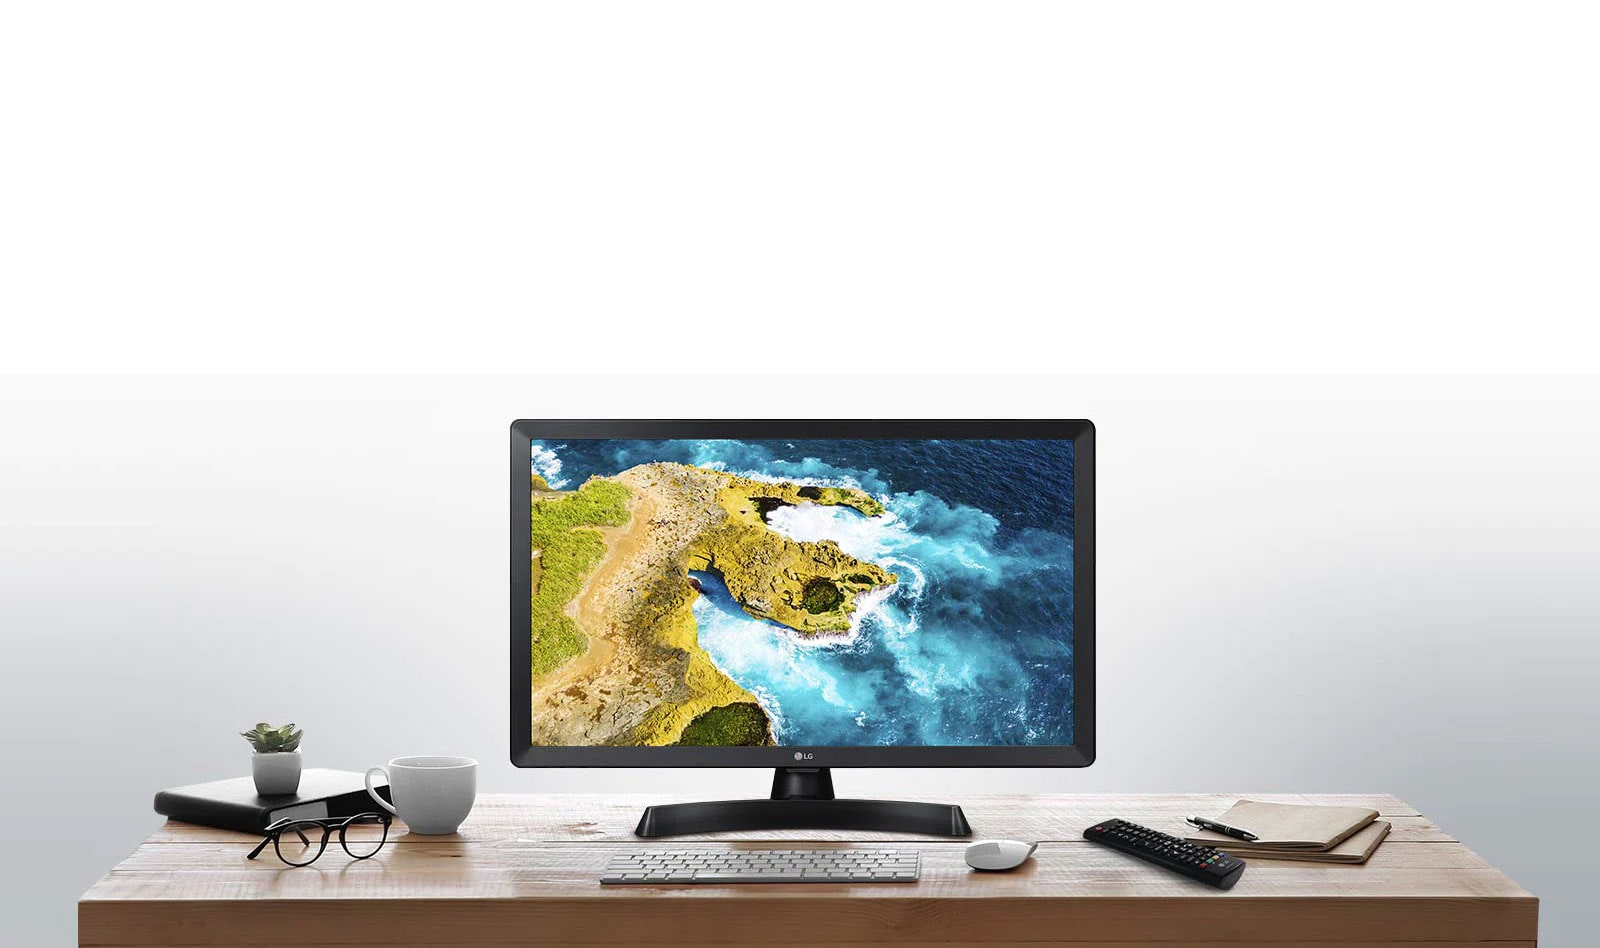 Ar LG LED TV monitoru varat iegt televizora un monitora apvienojumu